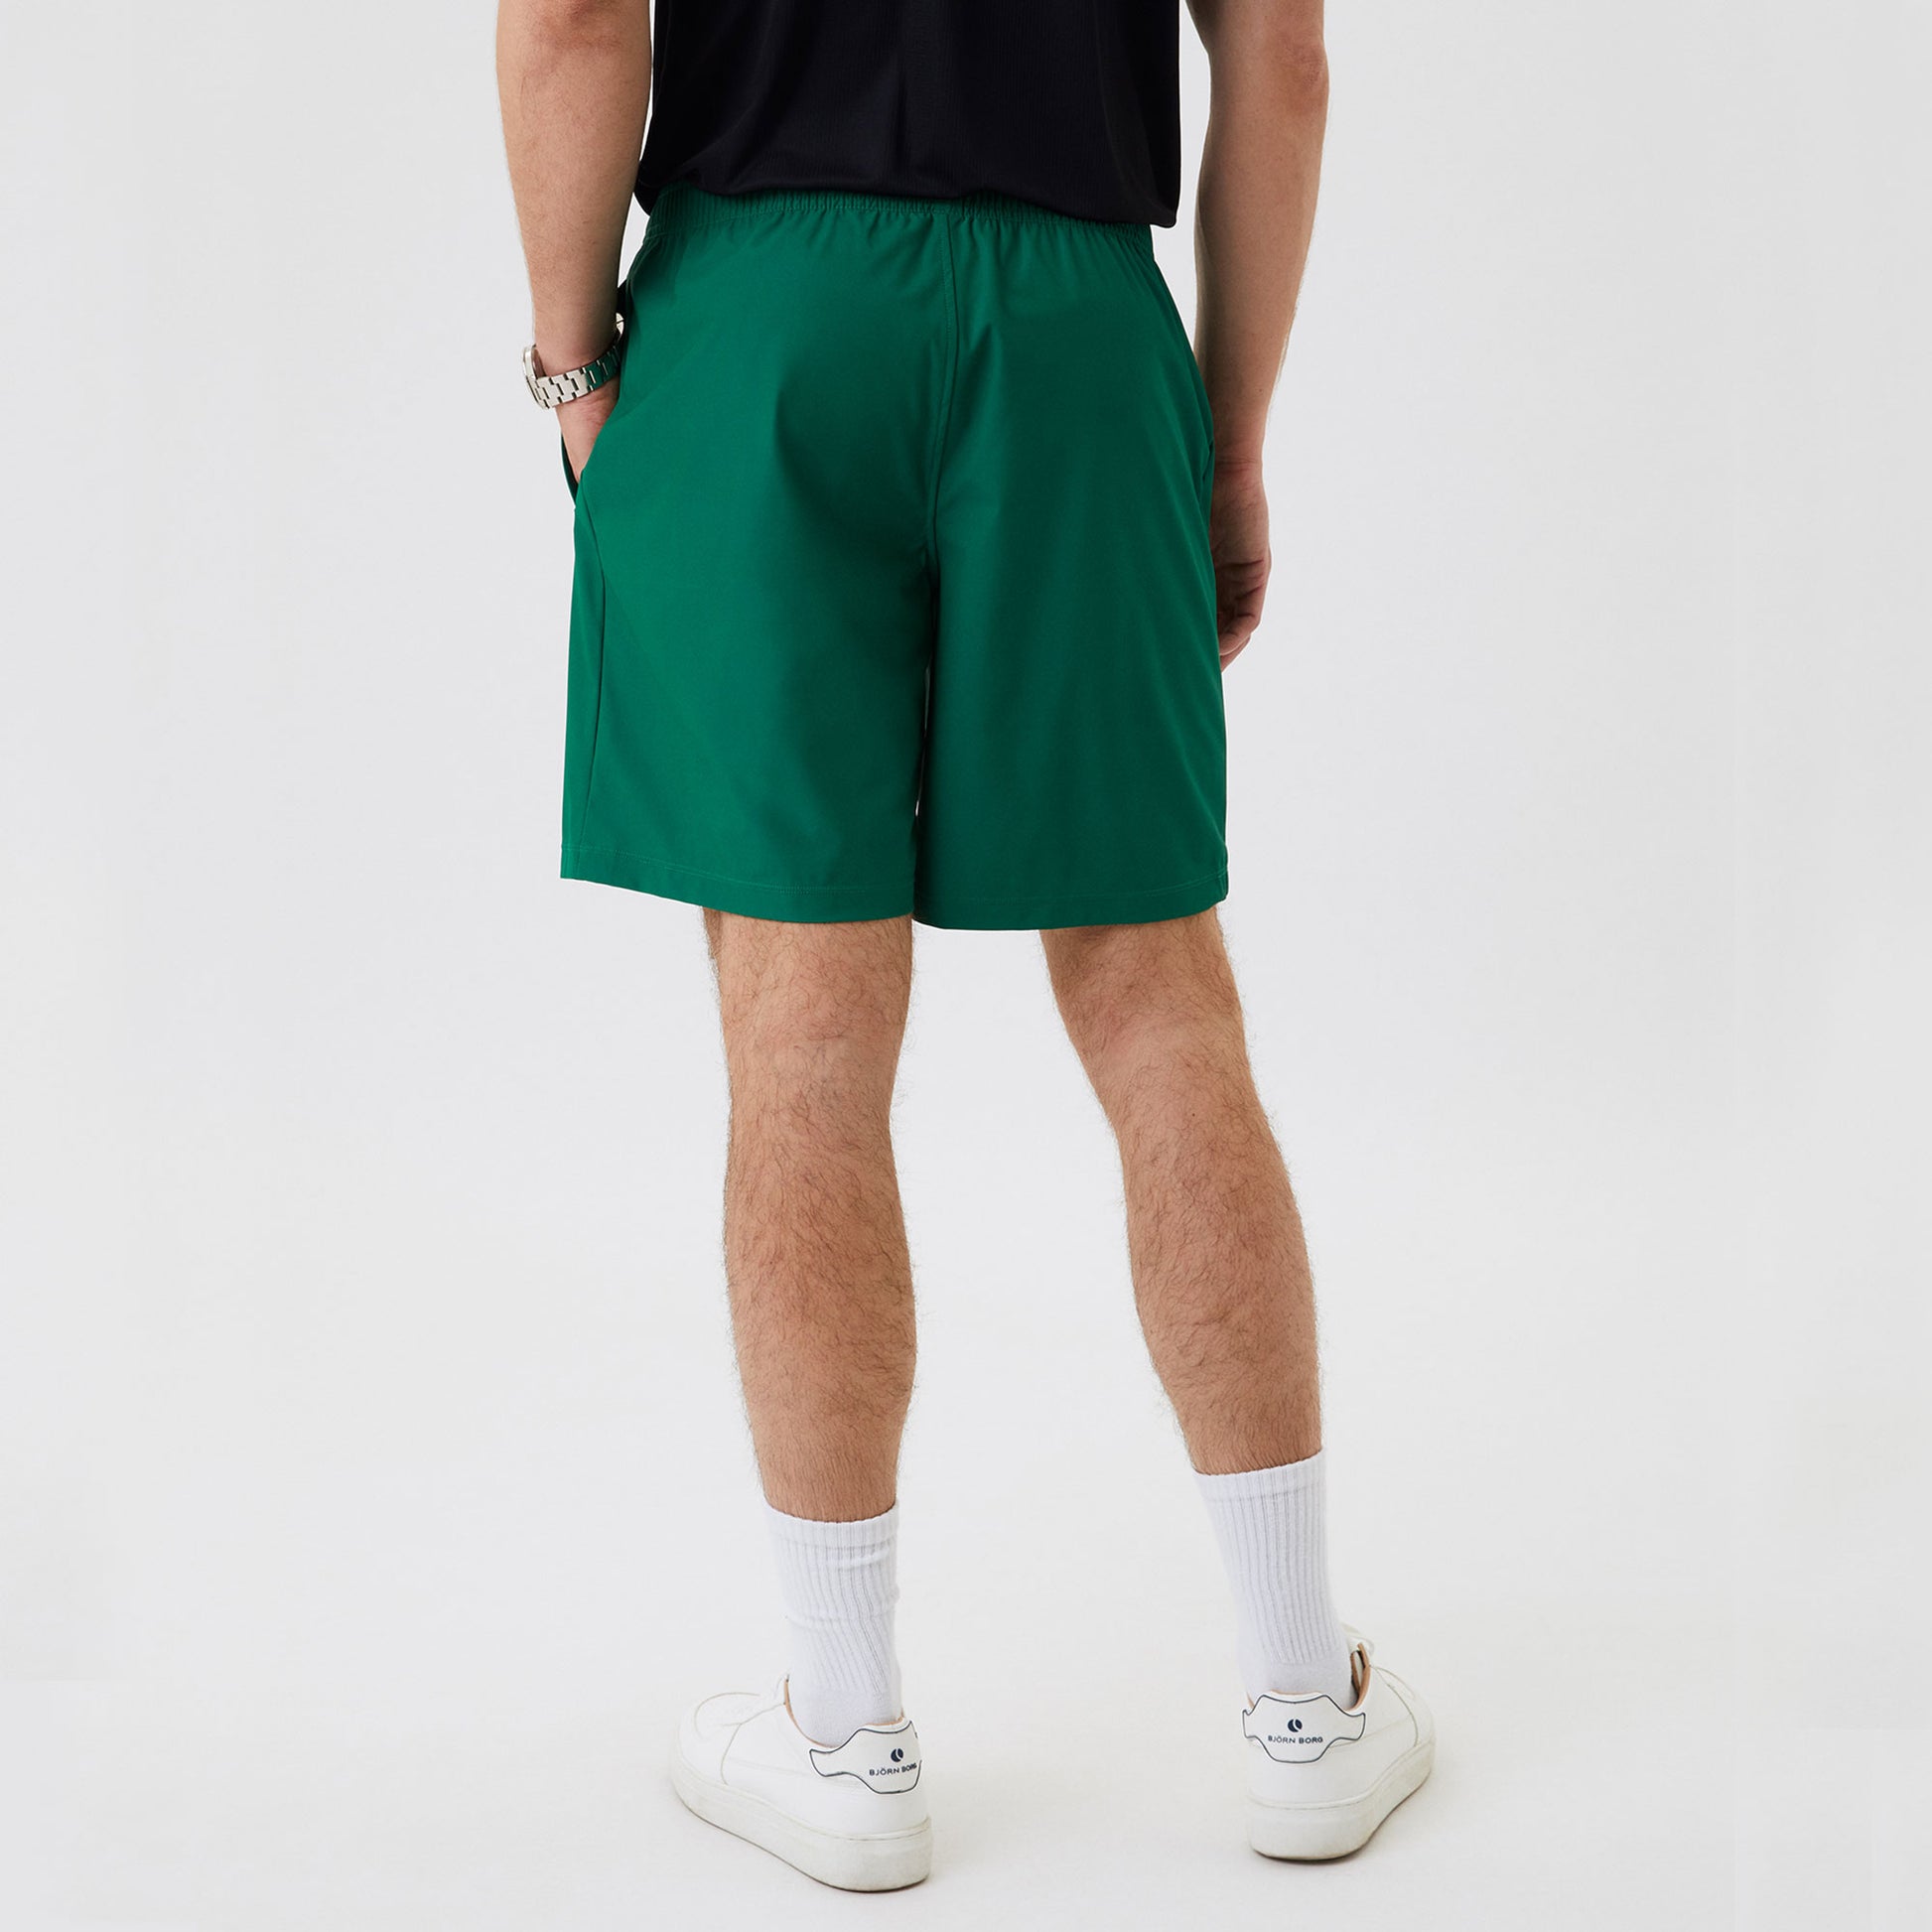 Björn Borg Ace Men's 9-Inch Tennis Shorts Green (2)